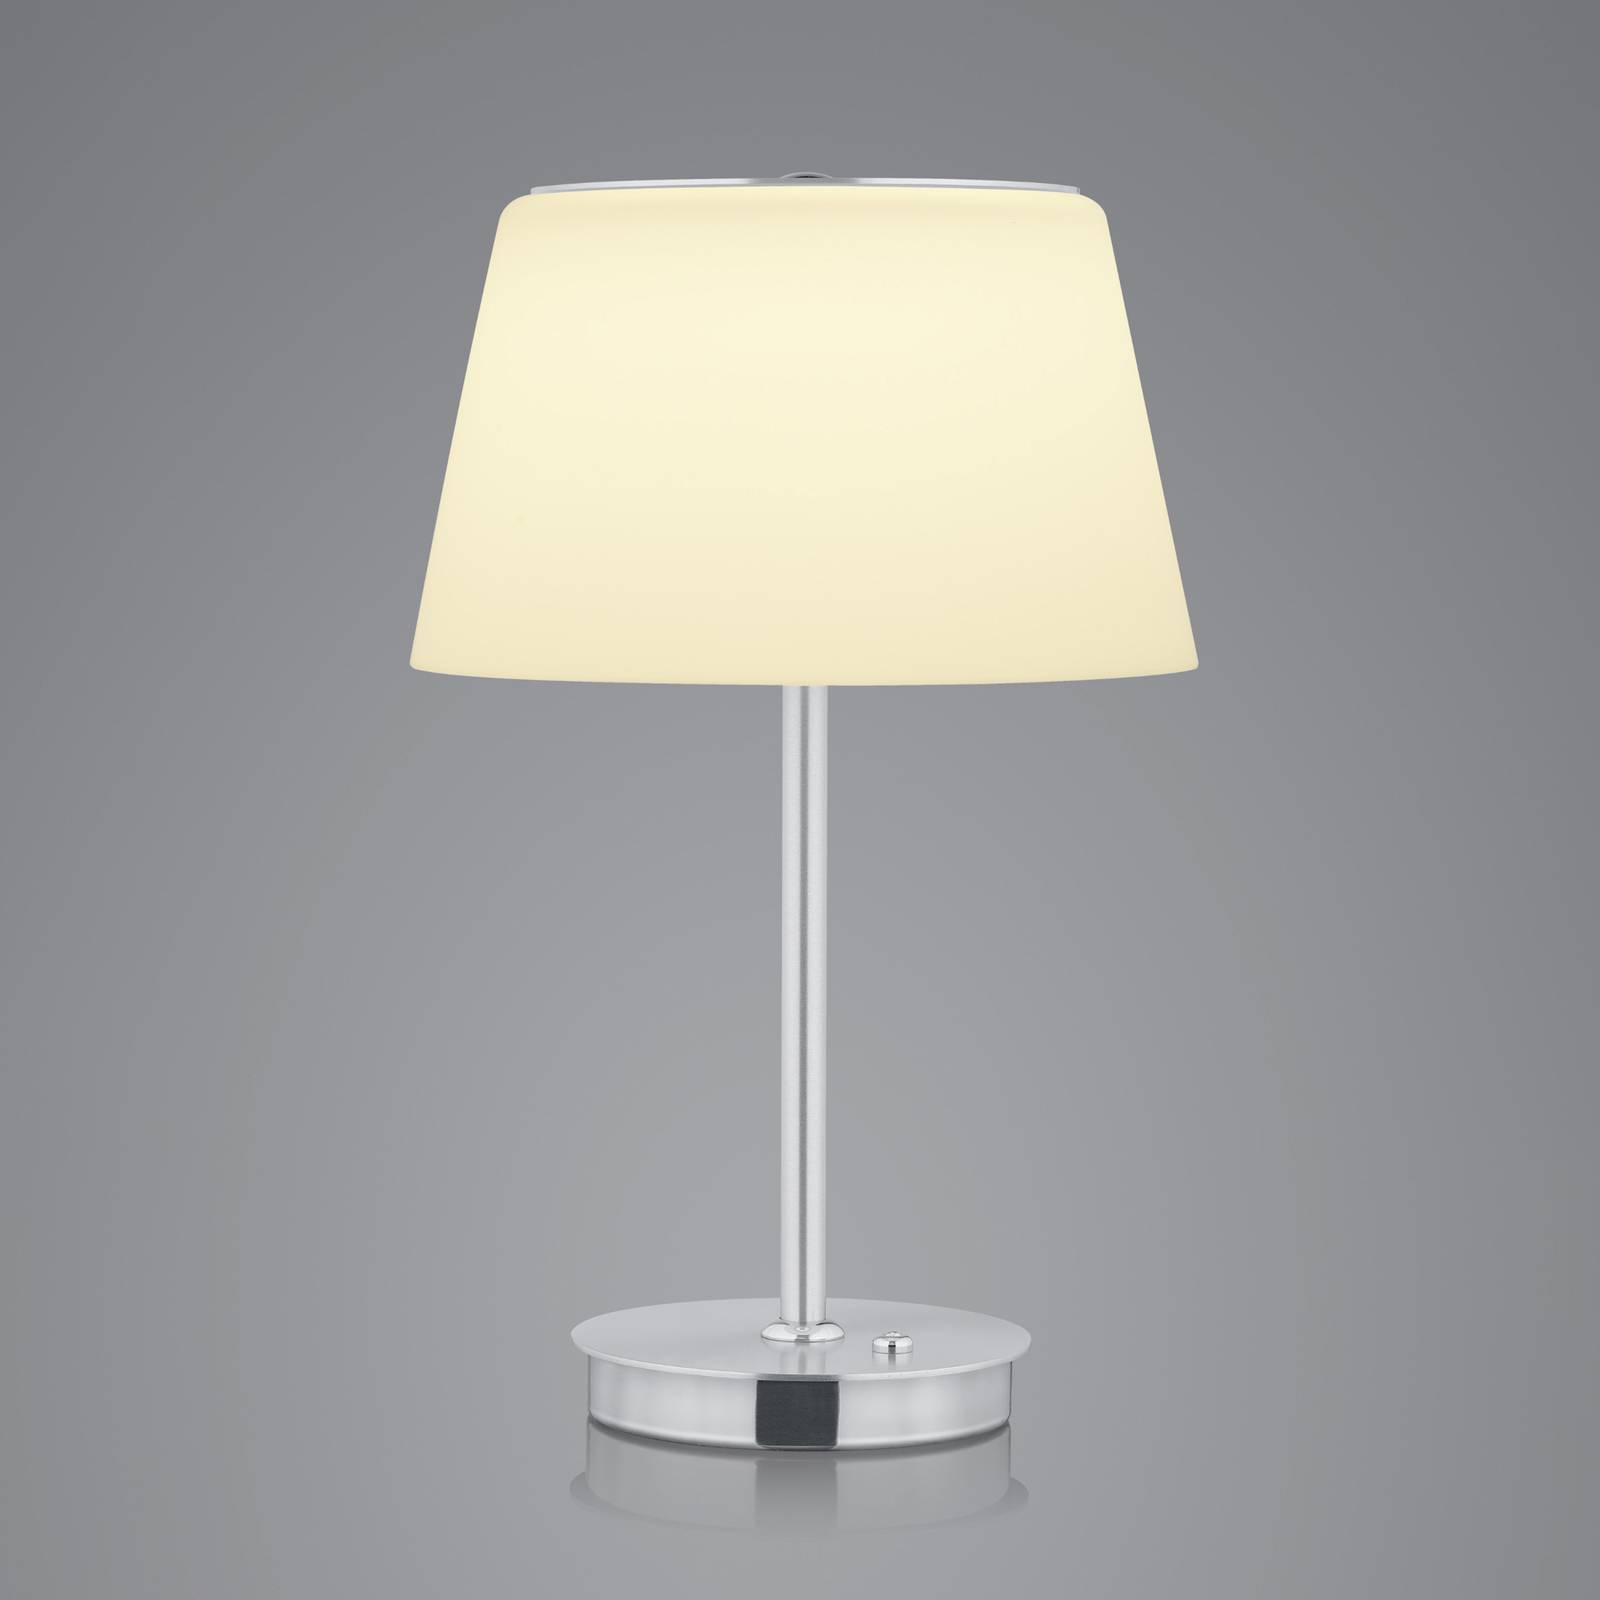 Bankamp conus led asztali lámpa, nikkel